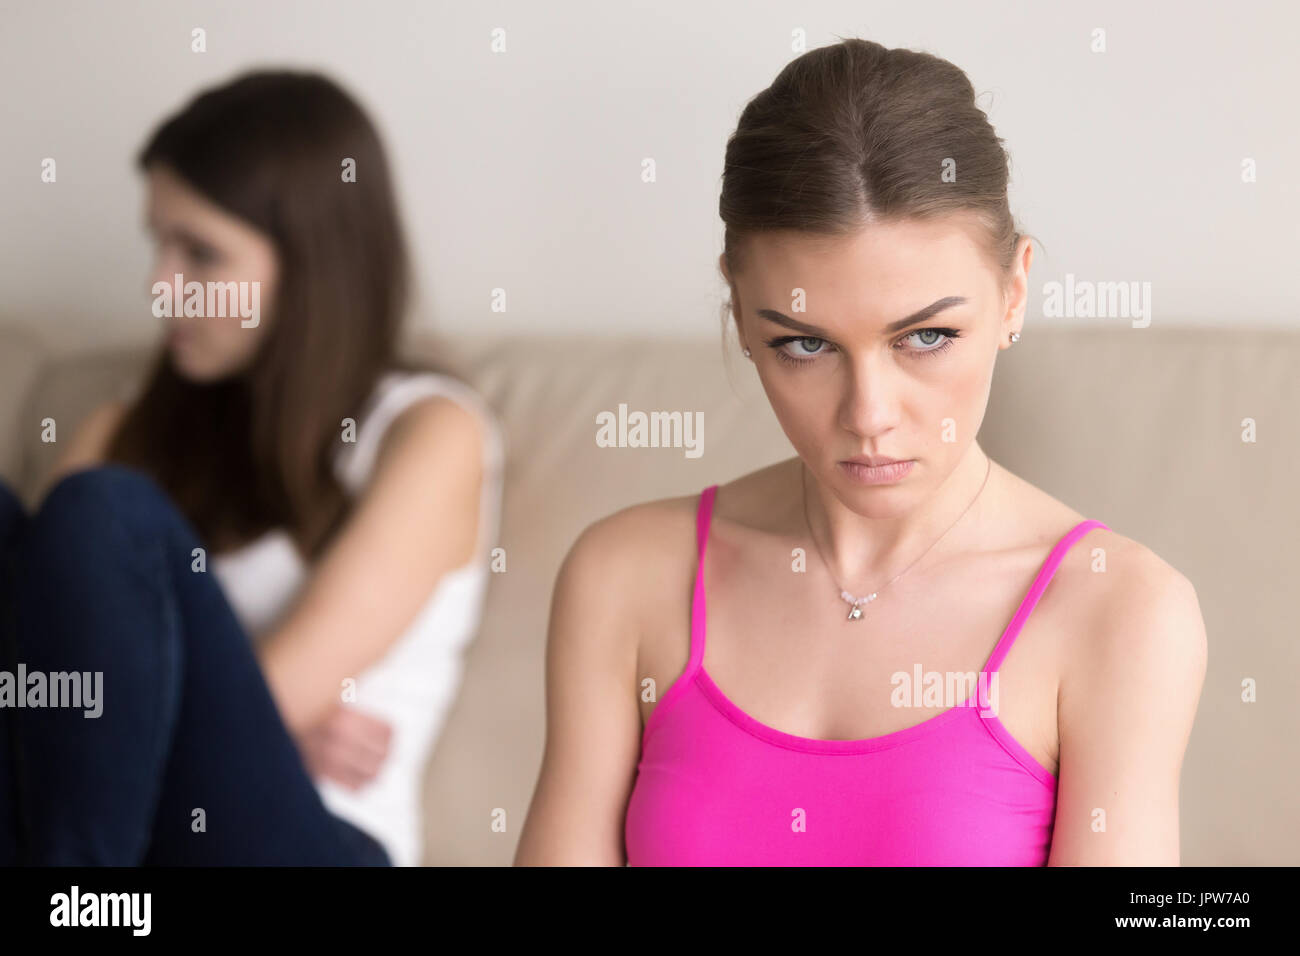 Mürrische Frau sitzt neben beleidigt Freundin Stockfoto